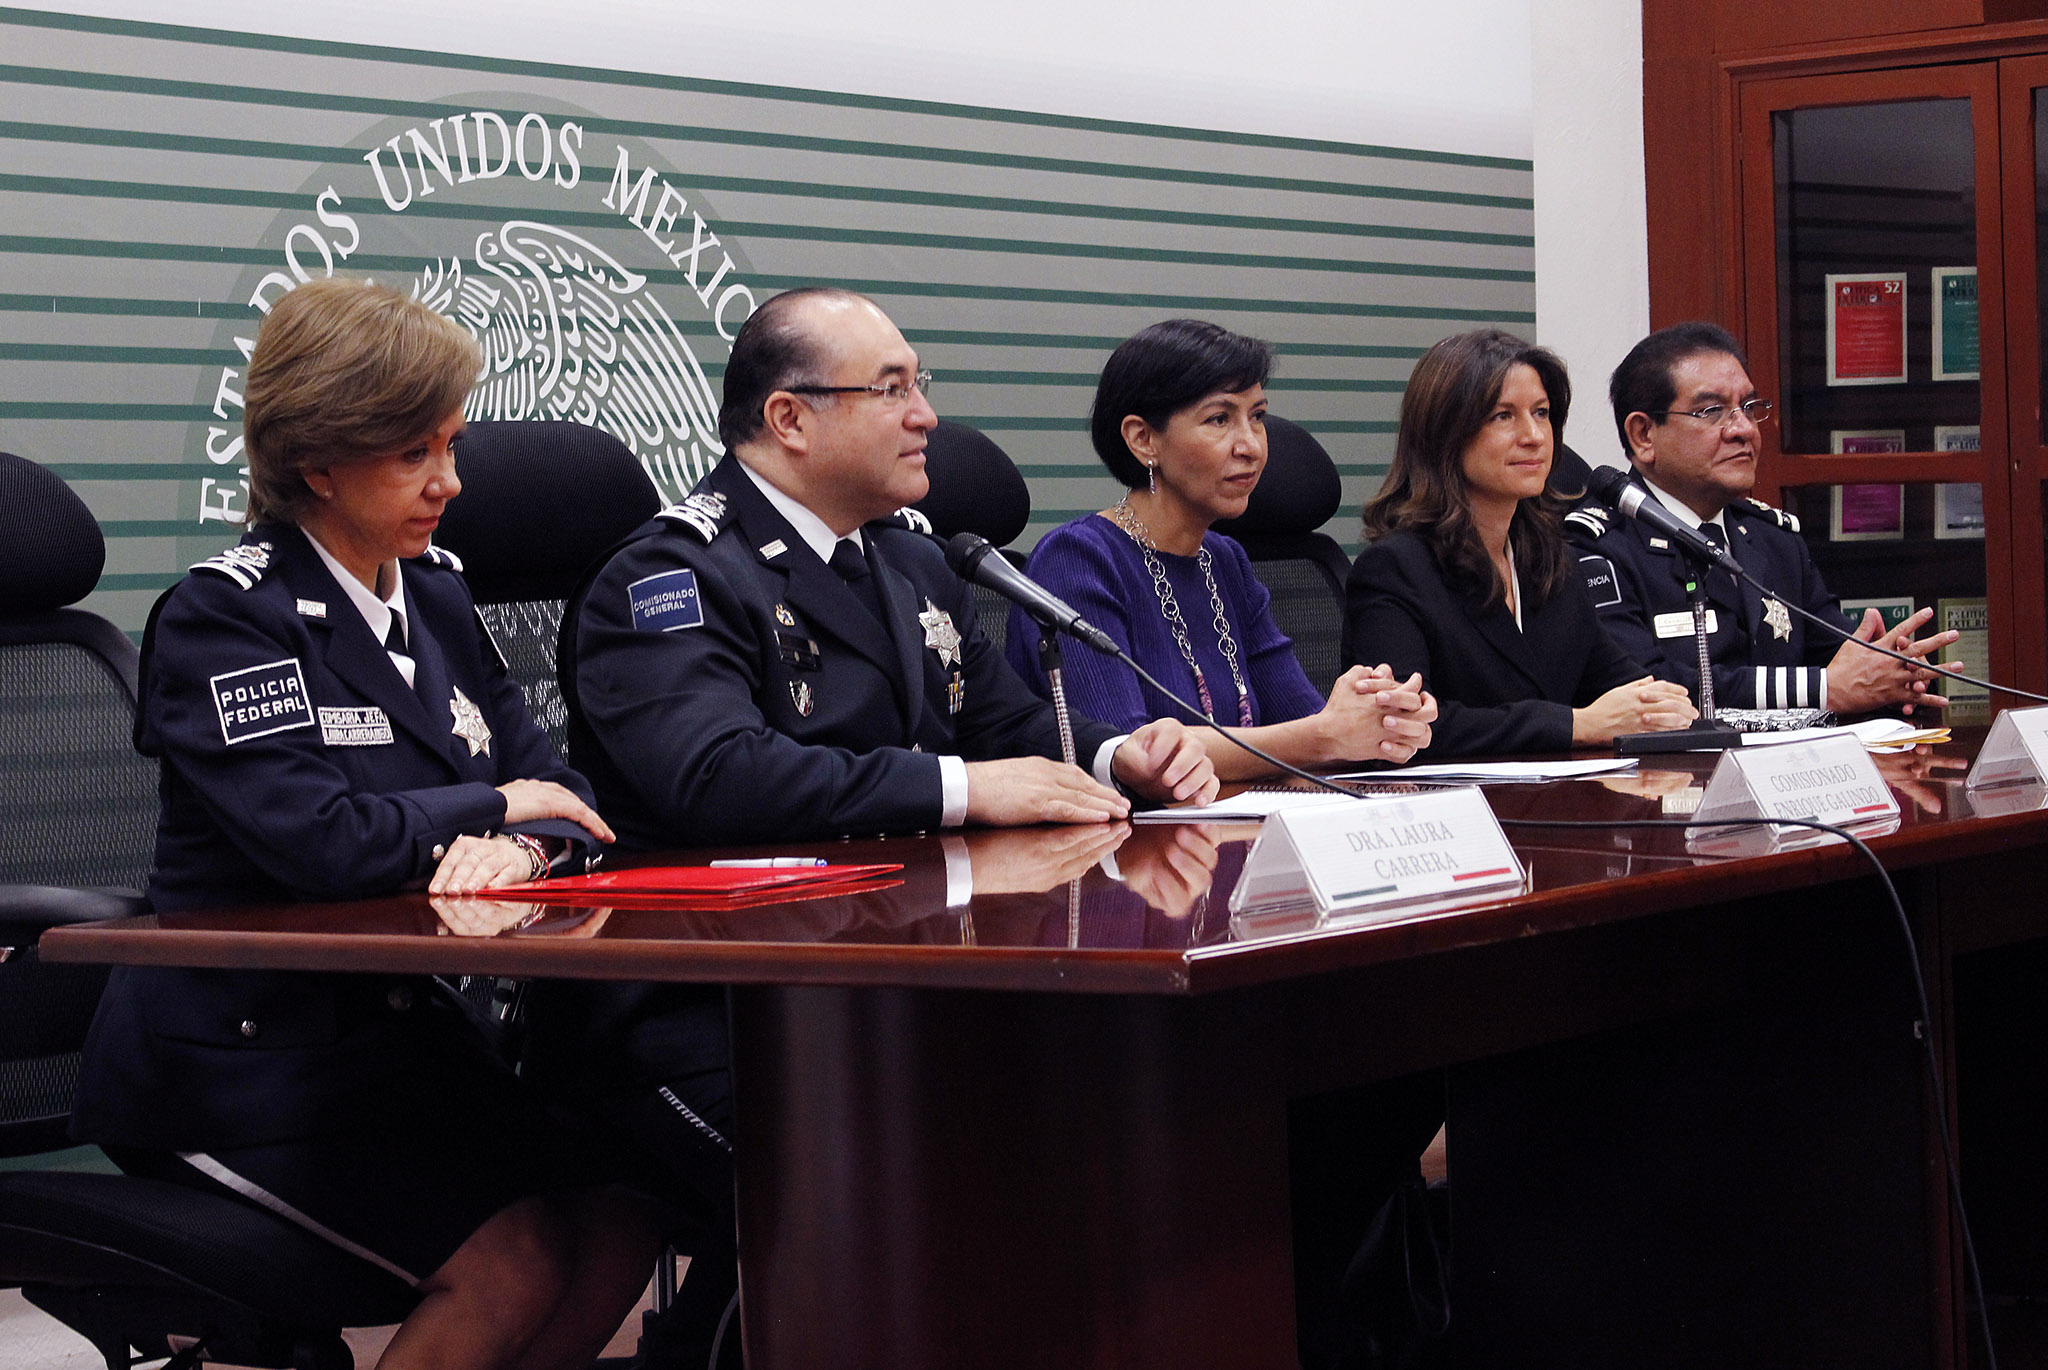 Capacitación a Policías Federales en materia de Diplomacia, Seguridad y Cooperación Internacionales.